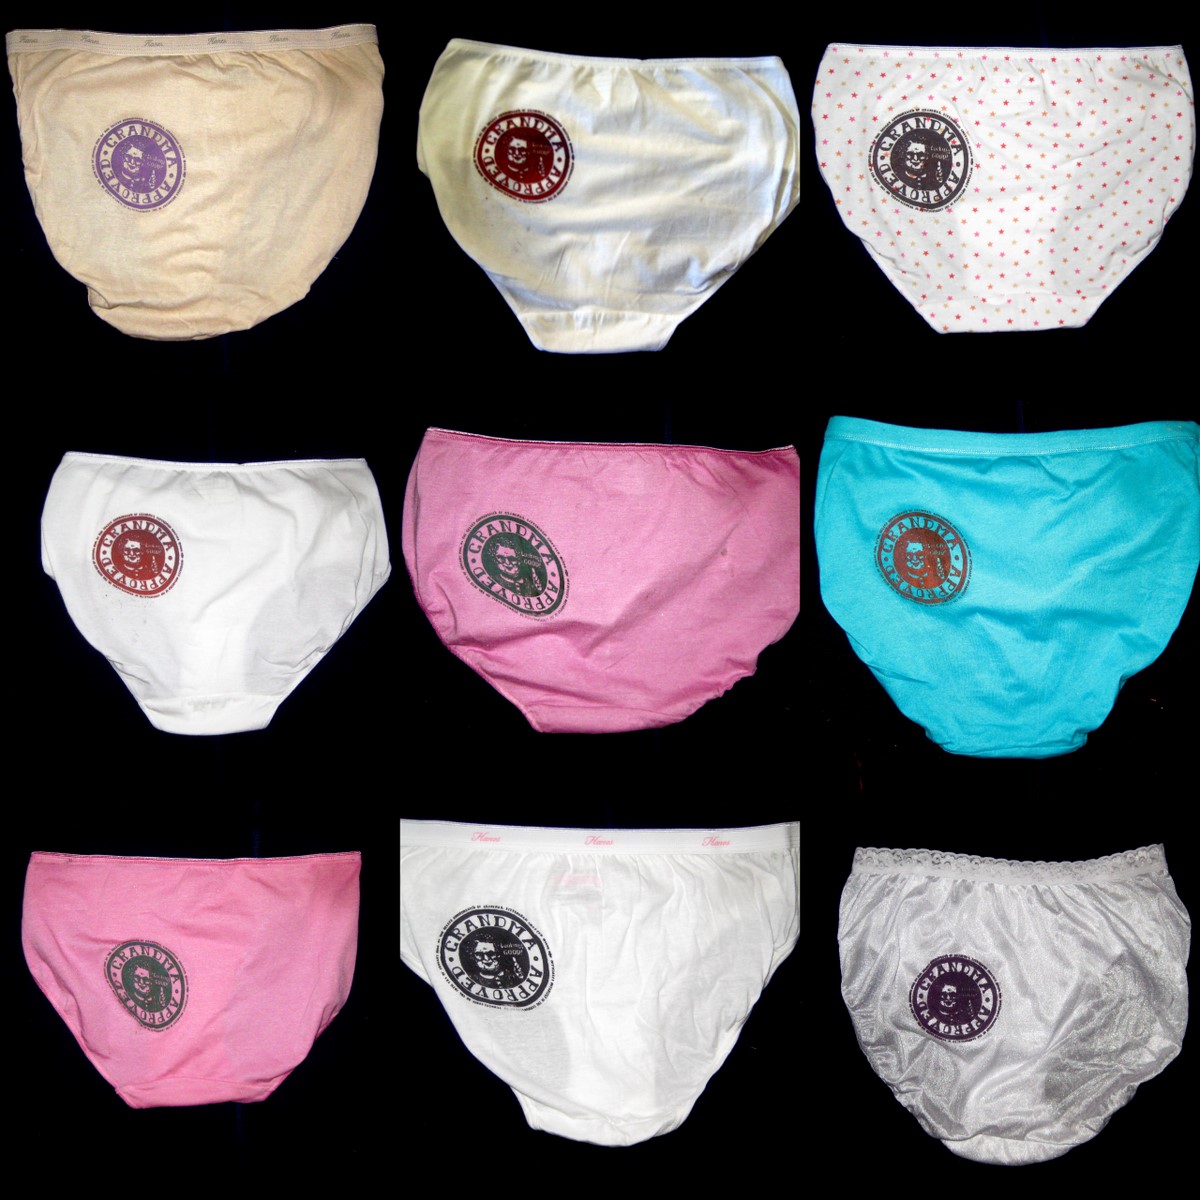 http://www.razblint.com/wp-content/uploads/2010/04/Razblint-Underwear-Grandma-Approved-Underwear.jpg